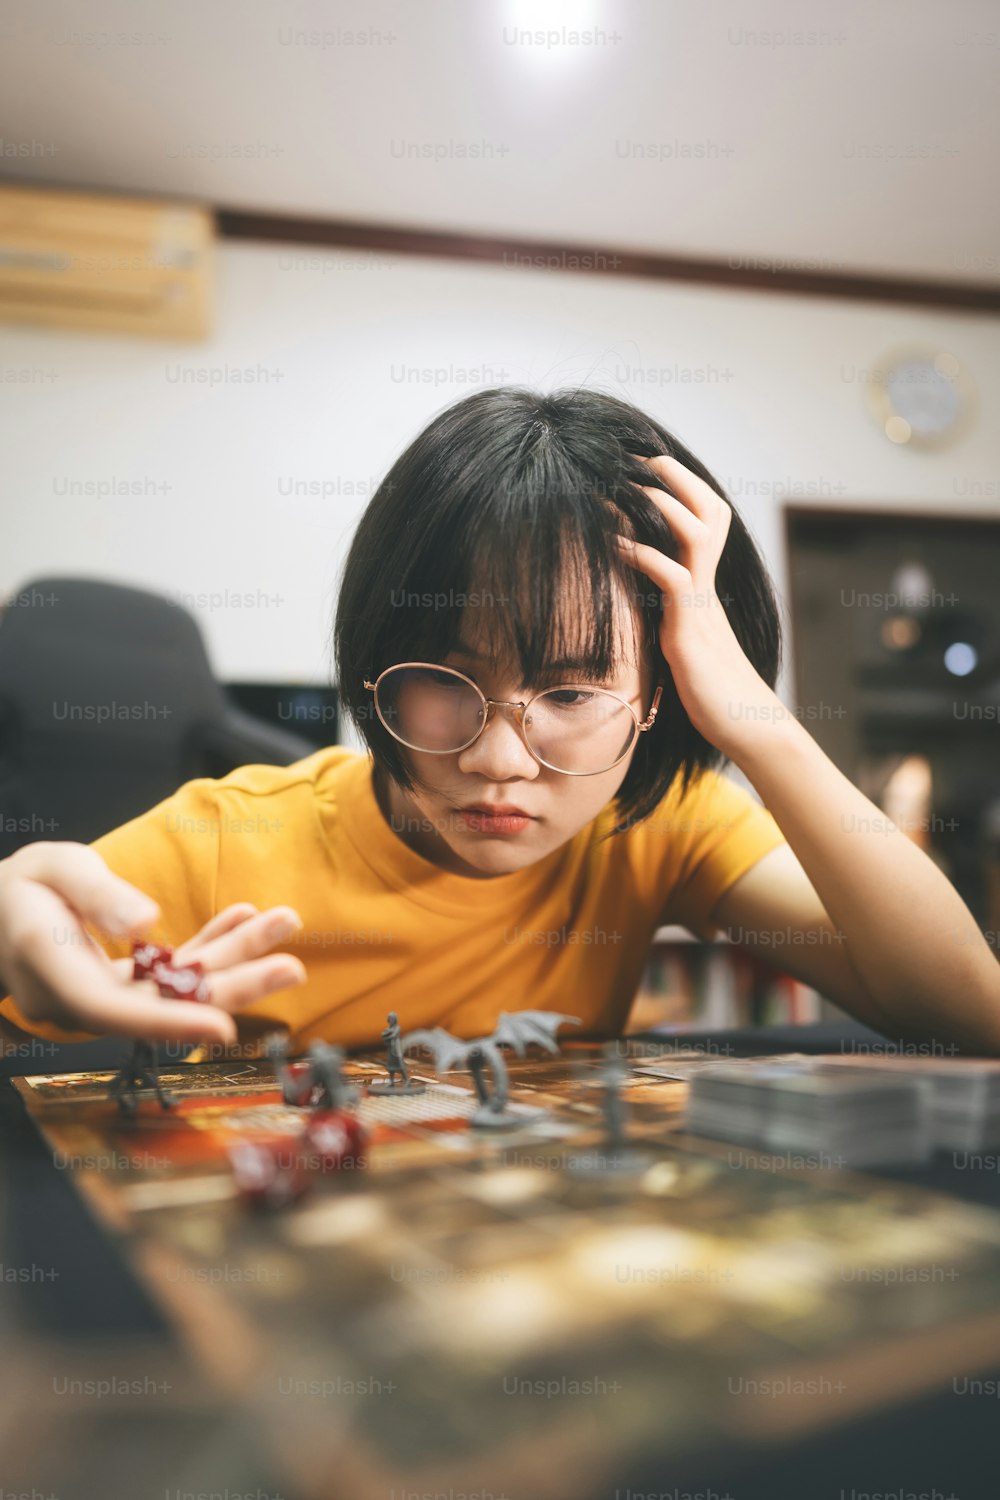 Pessoas estilo de vida com hobby interessante em casa conceito. Mulher asiática adulta jovem que joga o jogo de tabuleiro na mesa superior.